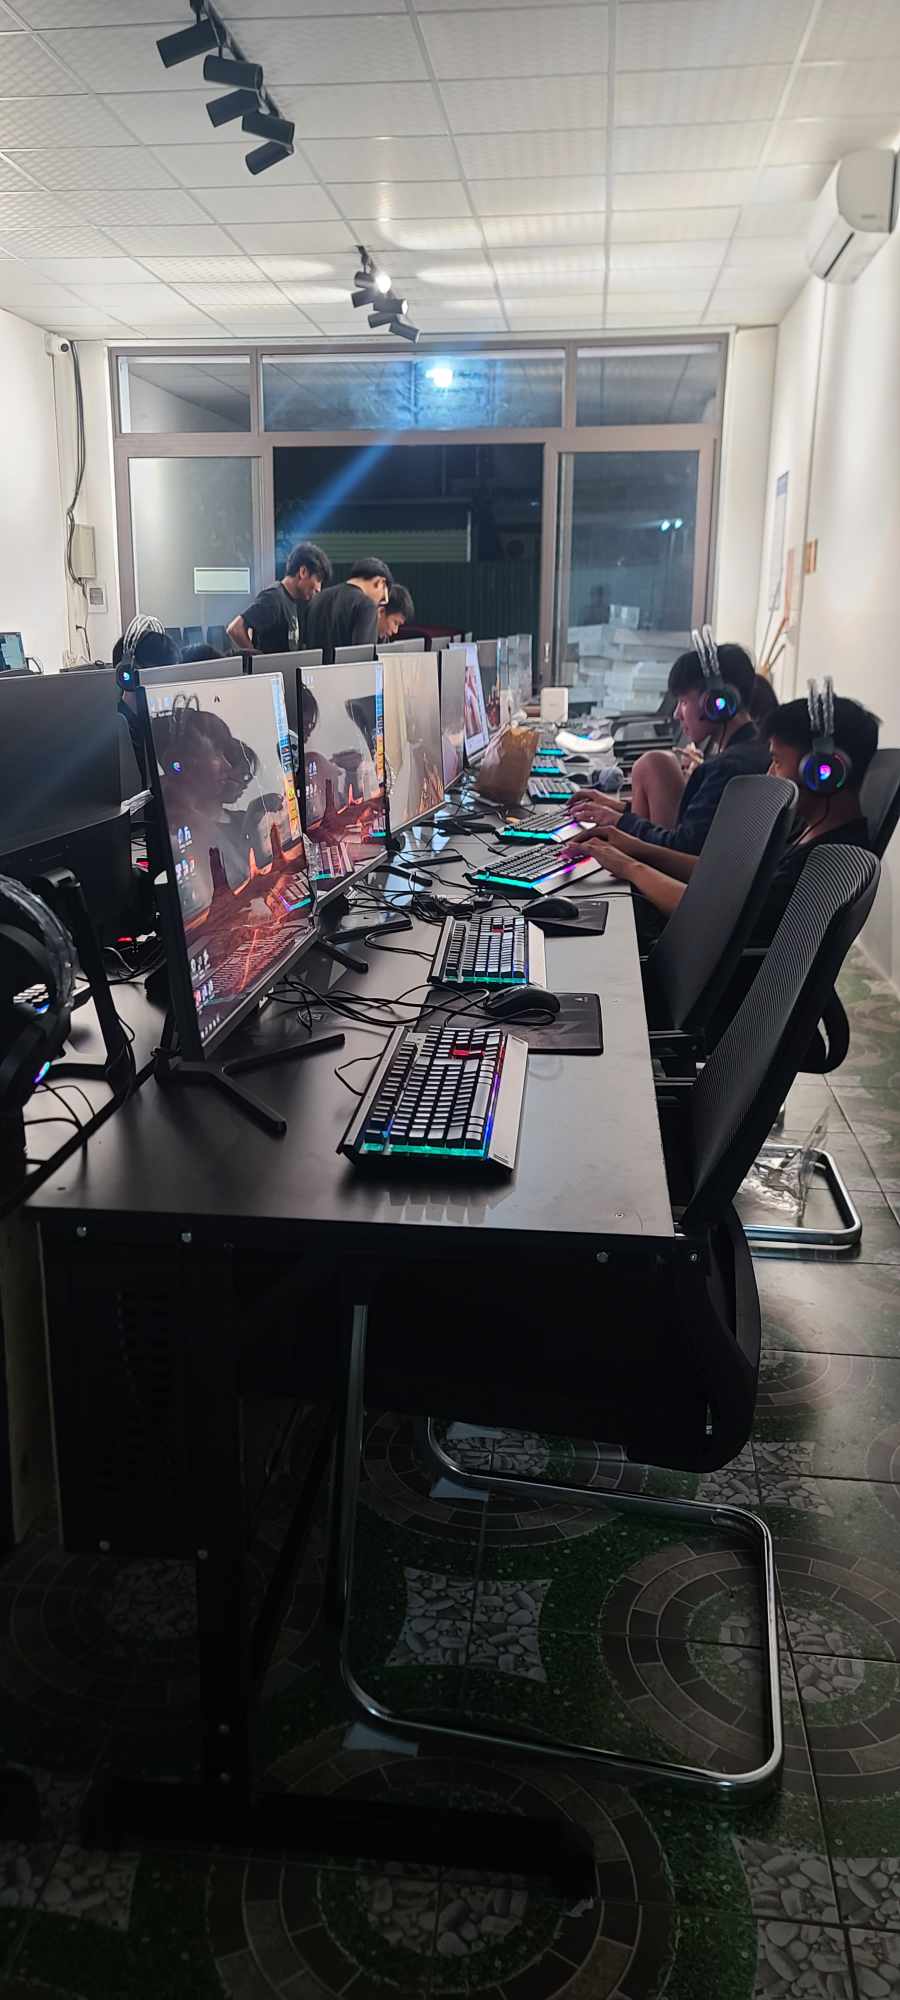 Thi công lắp đặt HD Gaming 30 máy máy tại  Đông Anh - Hà Nội